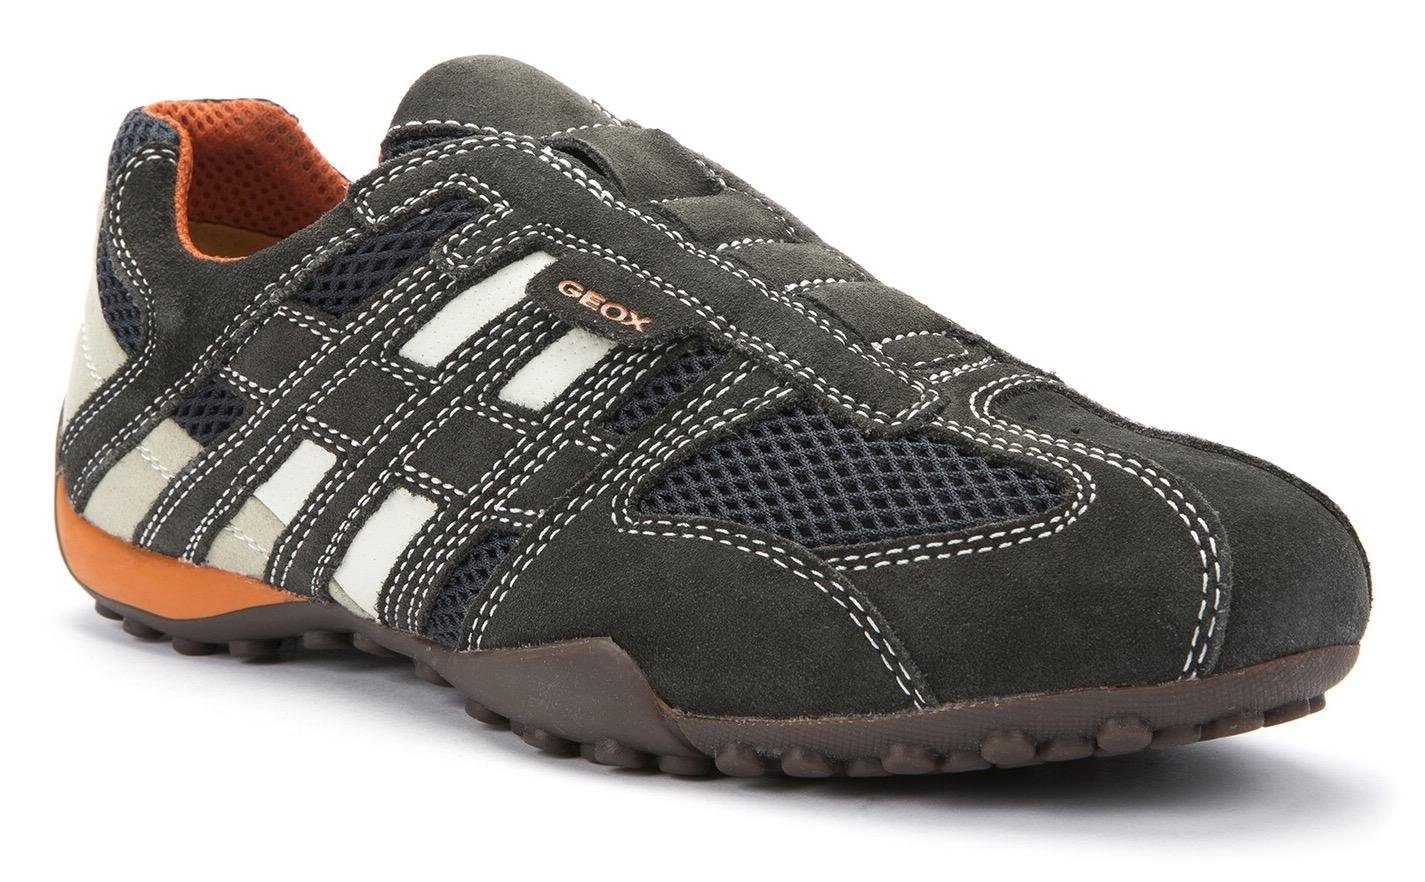 Geox UOMO SNAKE Slip-On Sneaker und Spezial Ziernähten mit modischen Membrane Geox mit dunkelgrau-beige